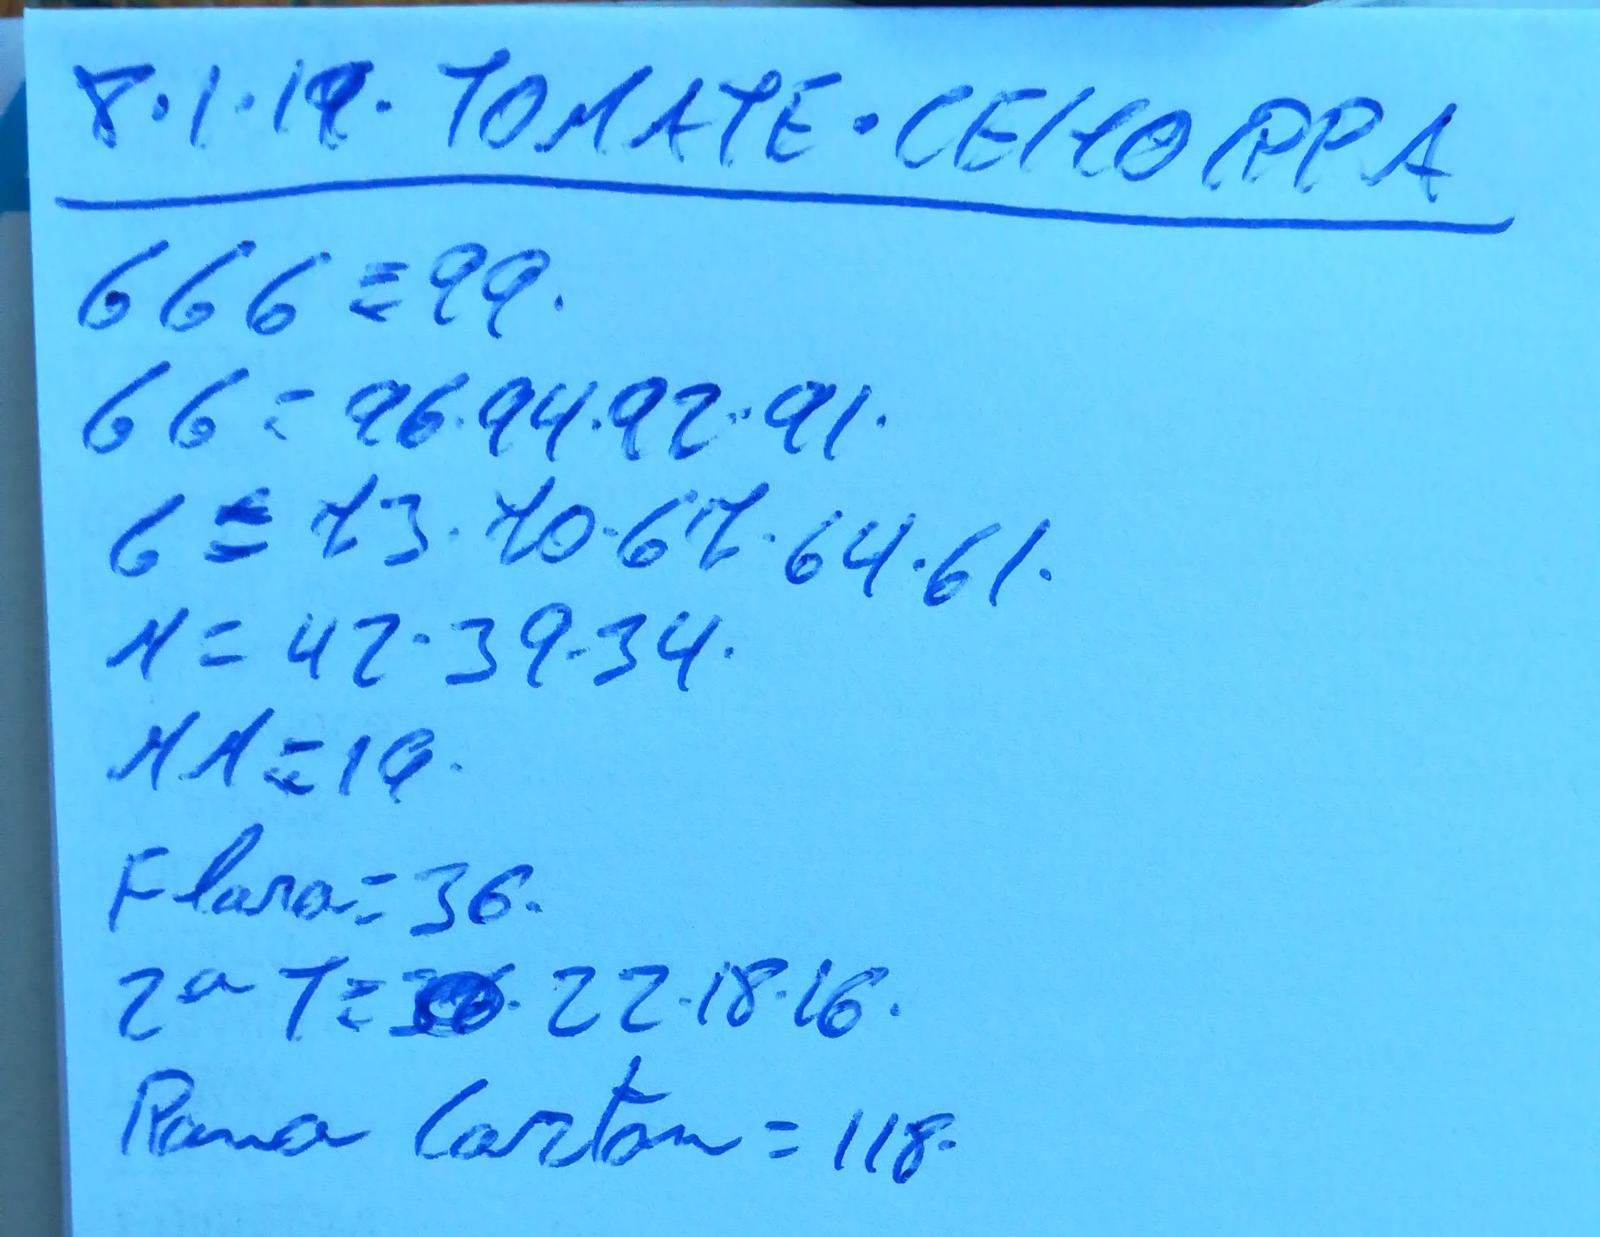 Subasta hortofrutícola Costa de Almería Cehorpa Tomates 8 de Enero 2019